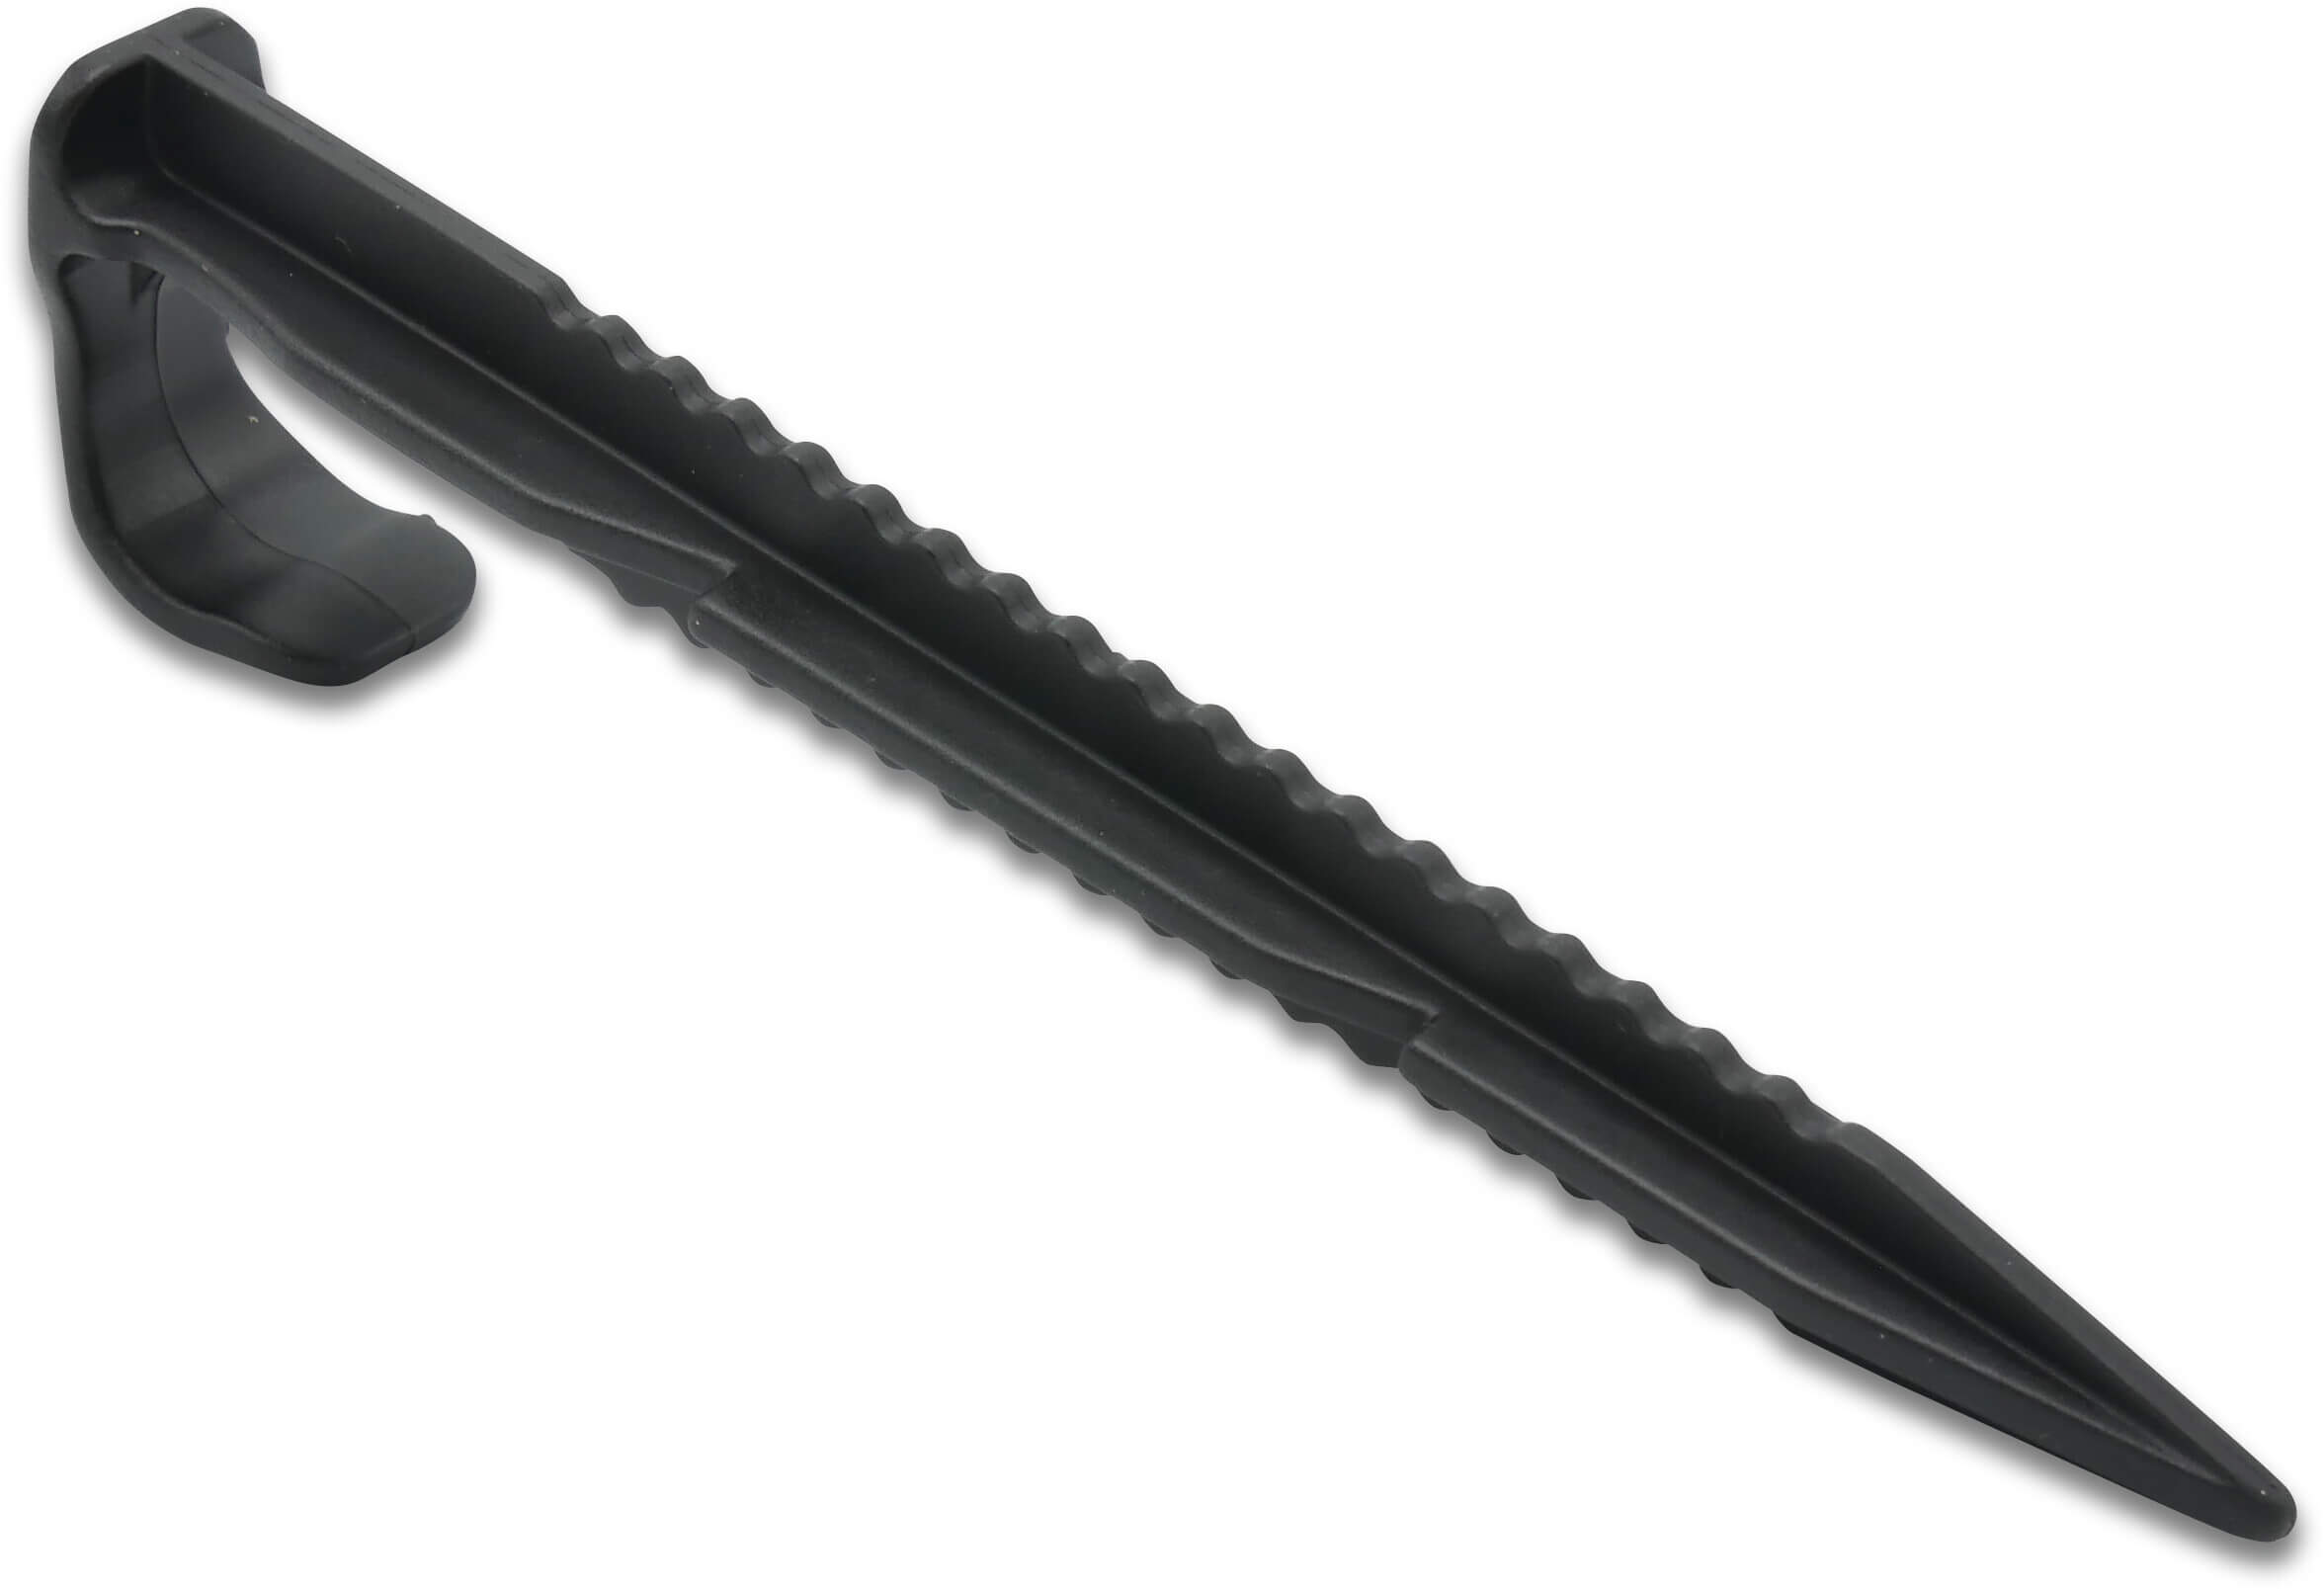 Tie-Down stake plastic 16-20 mm 15cm black